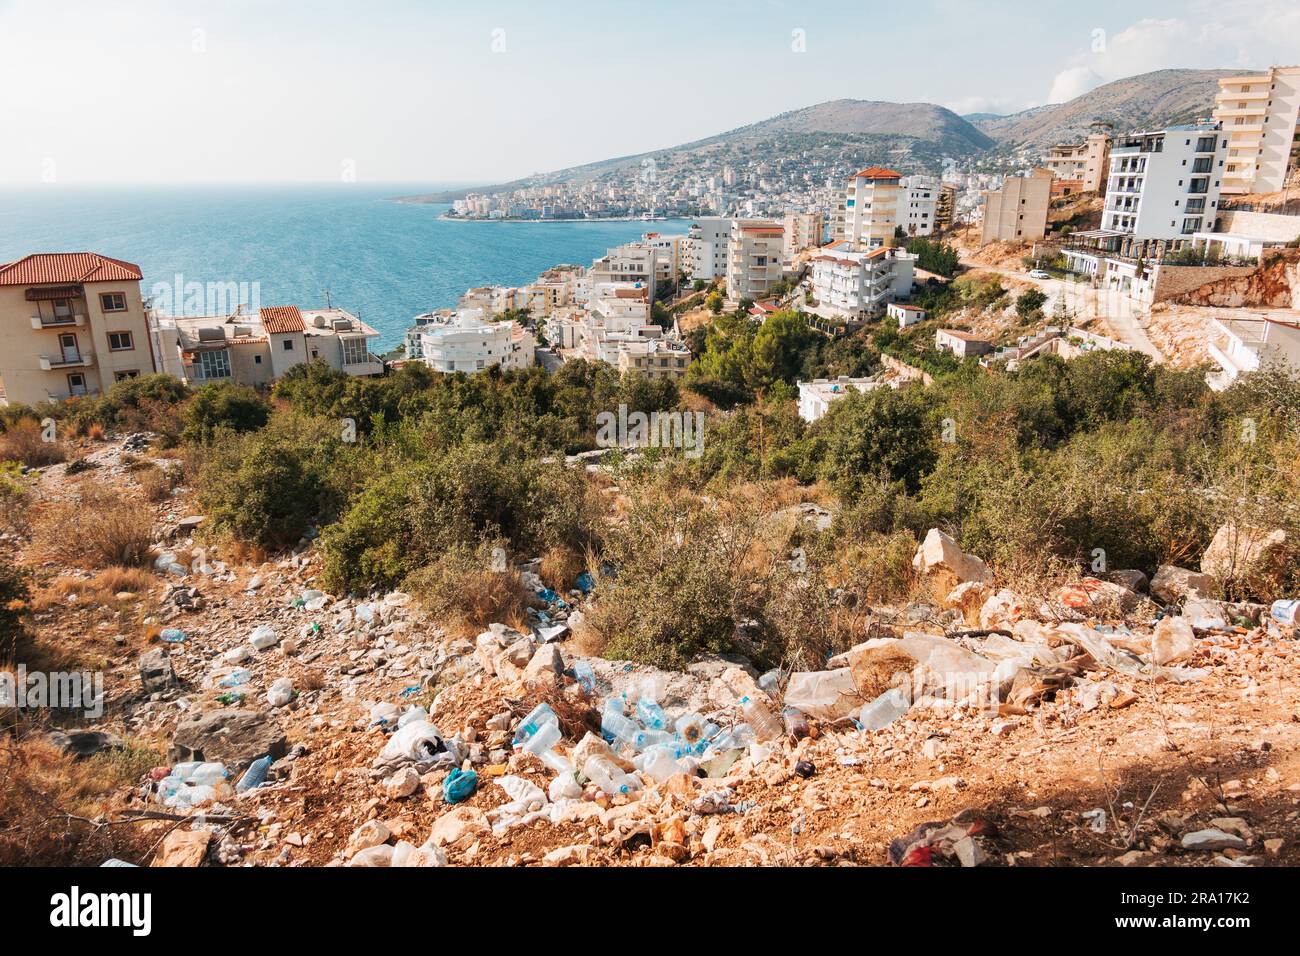 Una pila di rifiuti di plastica scaricati illegalmente su una collina a Sarandë, una località turistica nel sud dell'Albania Foto Stock